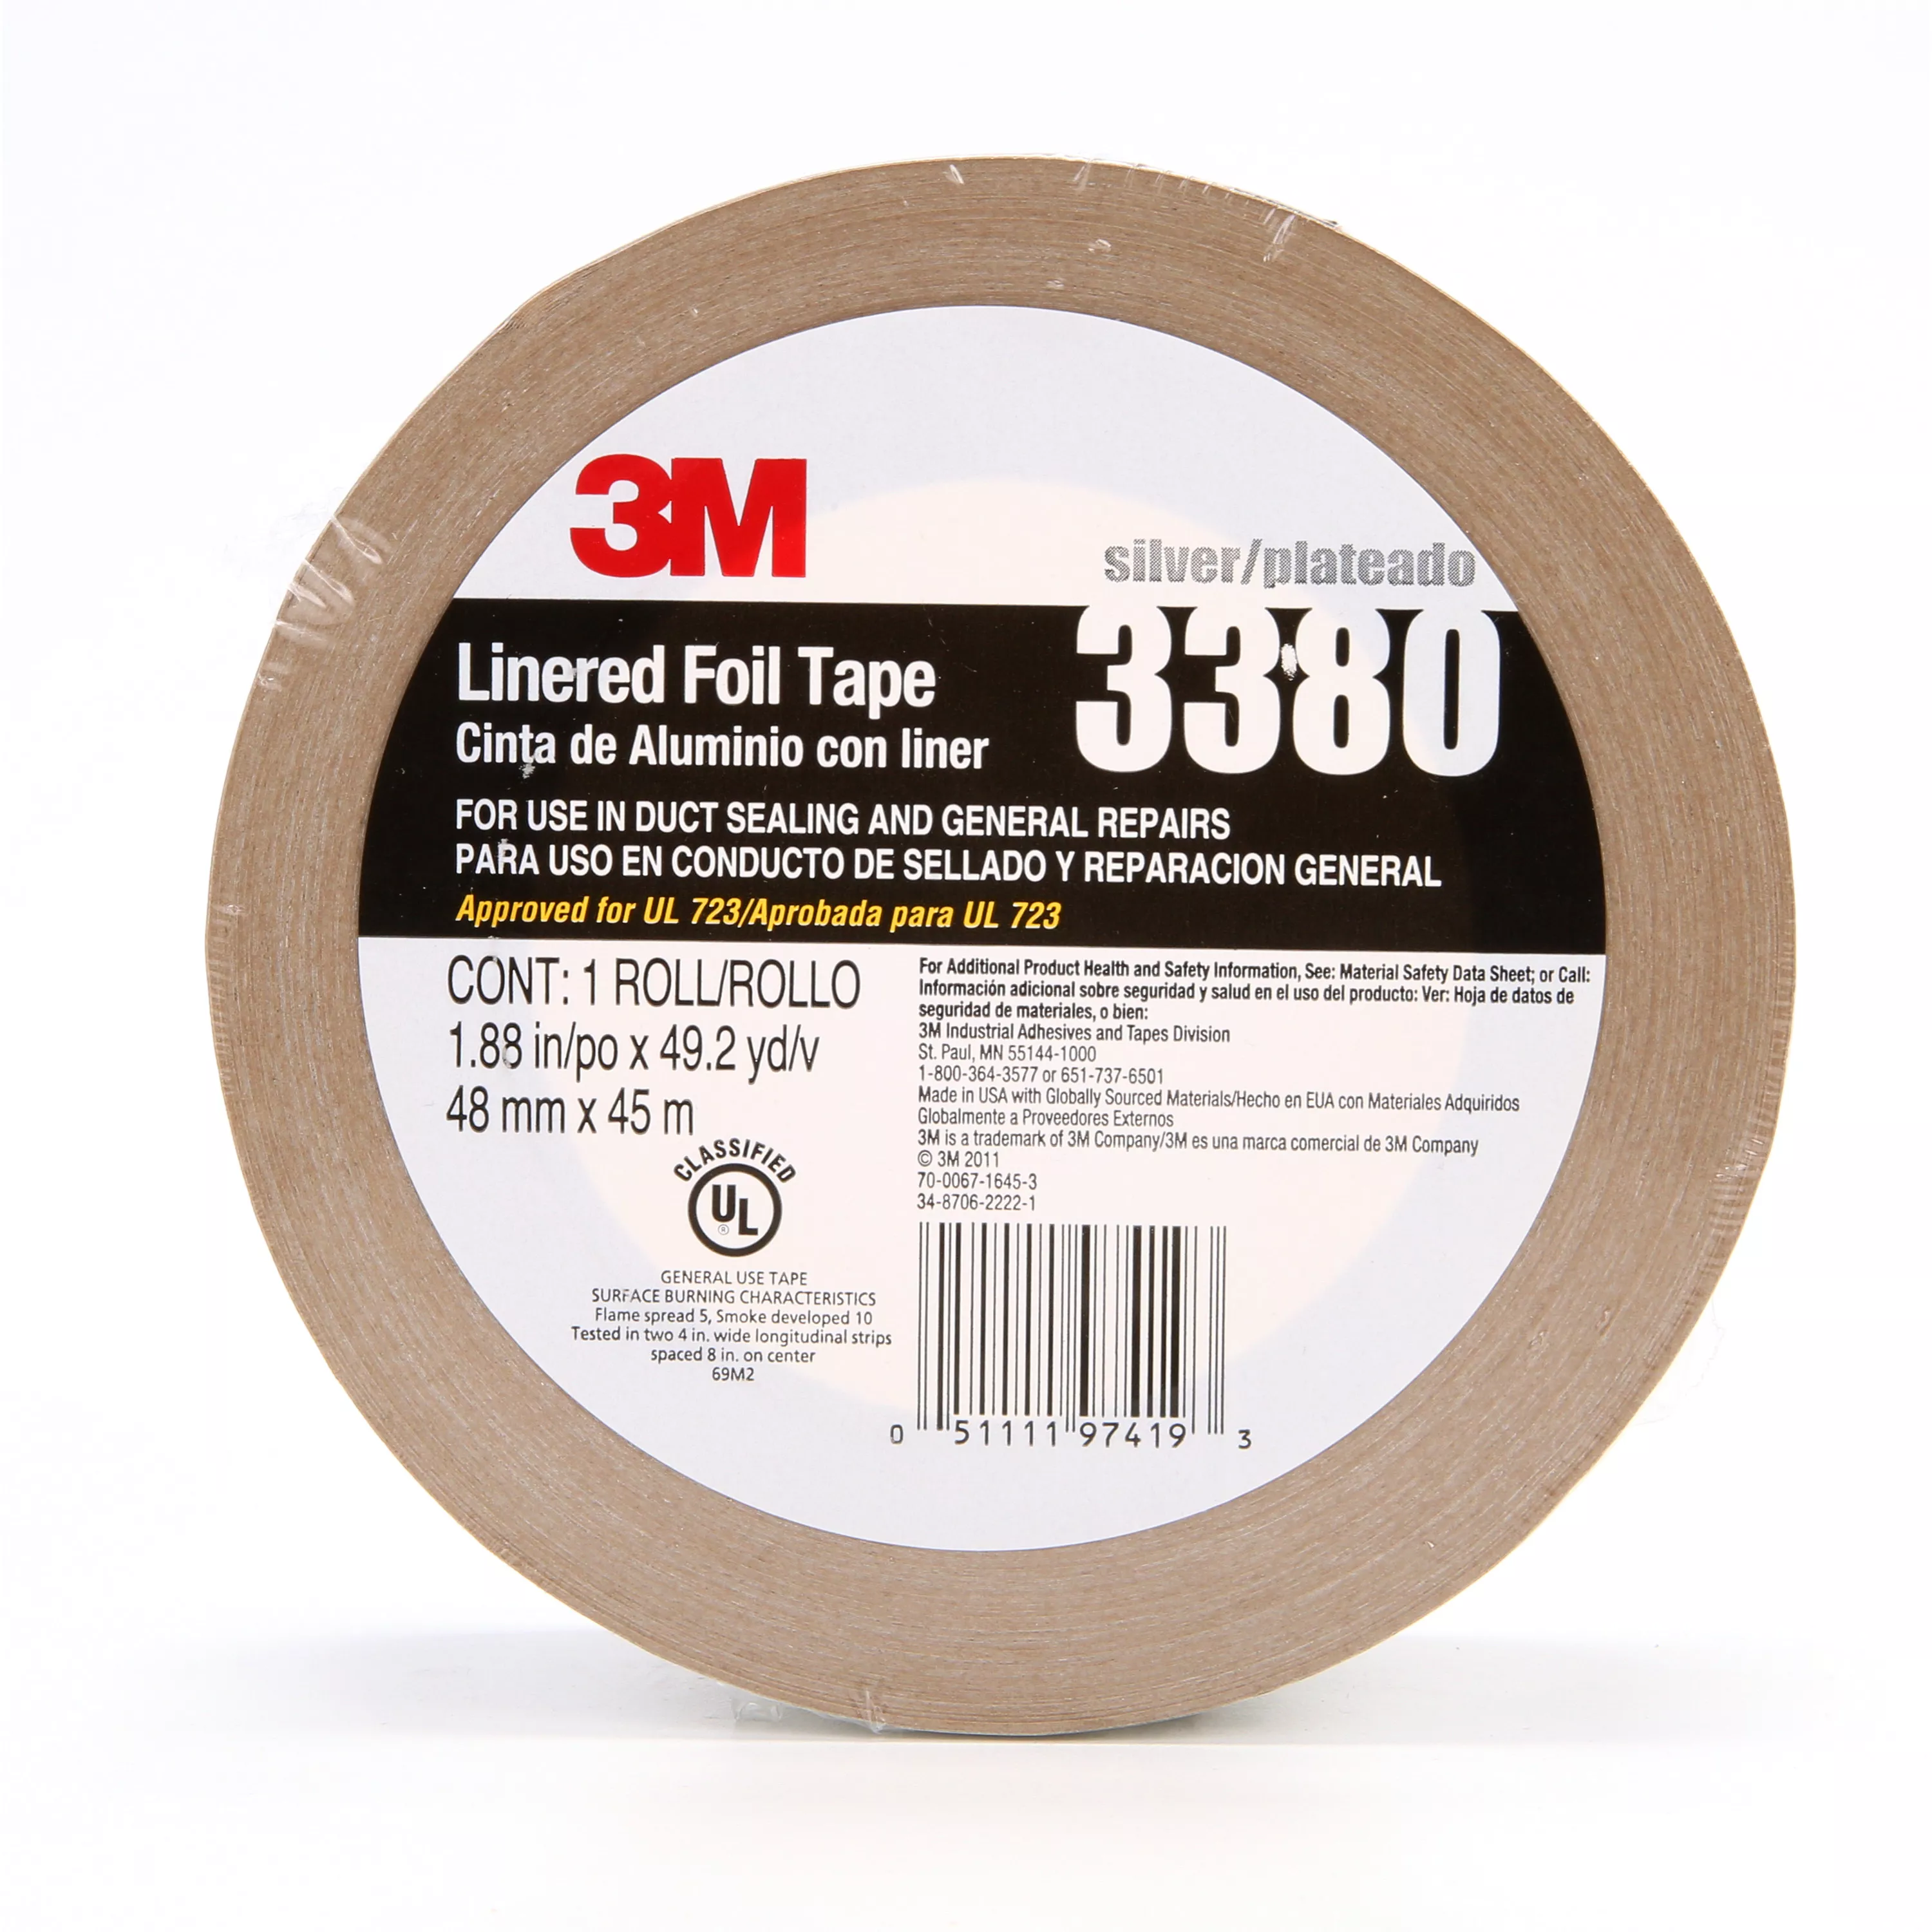 3M™ Aluminum Foil Tape 3380, Silver, 48 mm x 45 m, 3.25 mil, 24
Rolls/Case